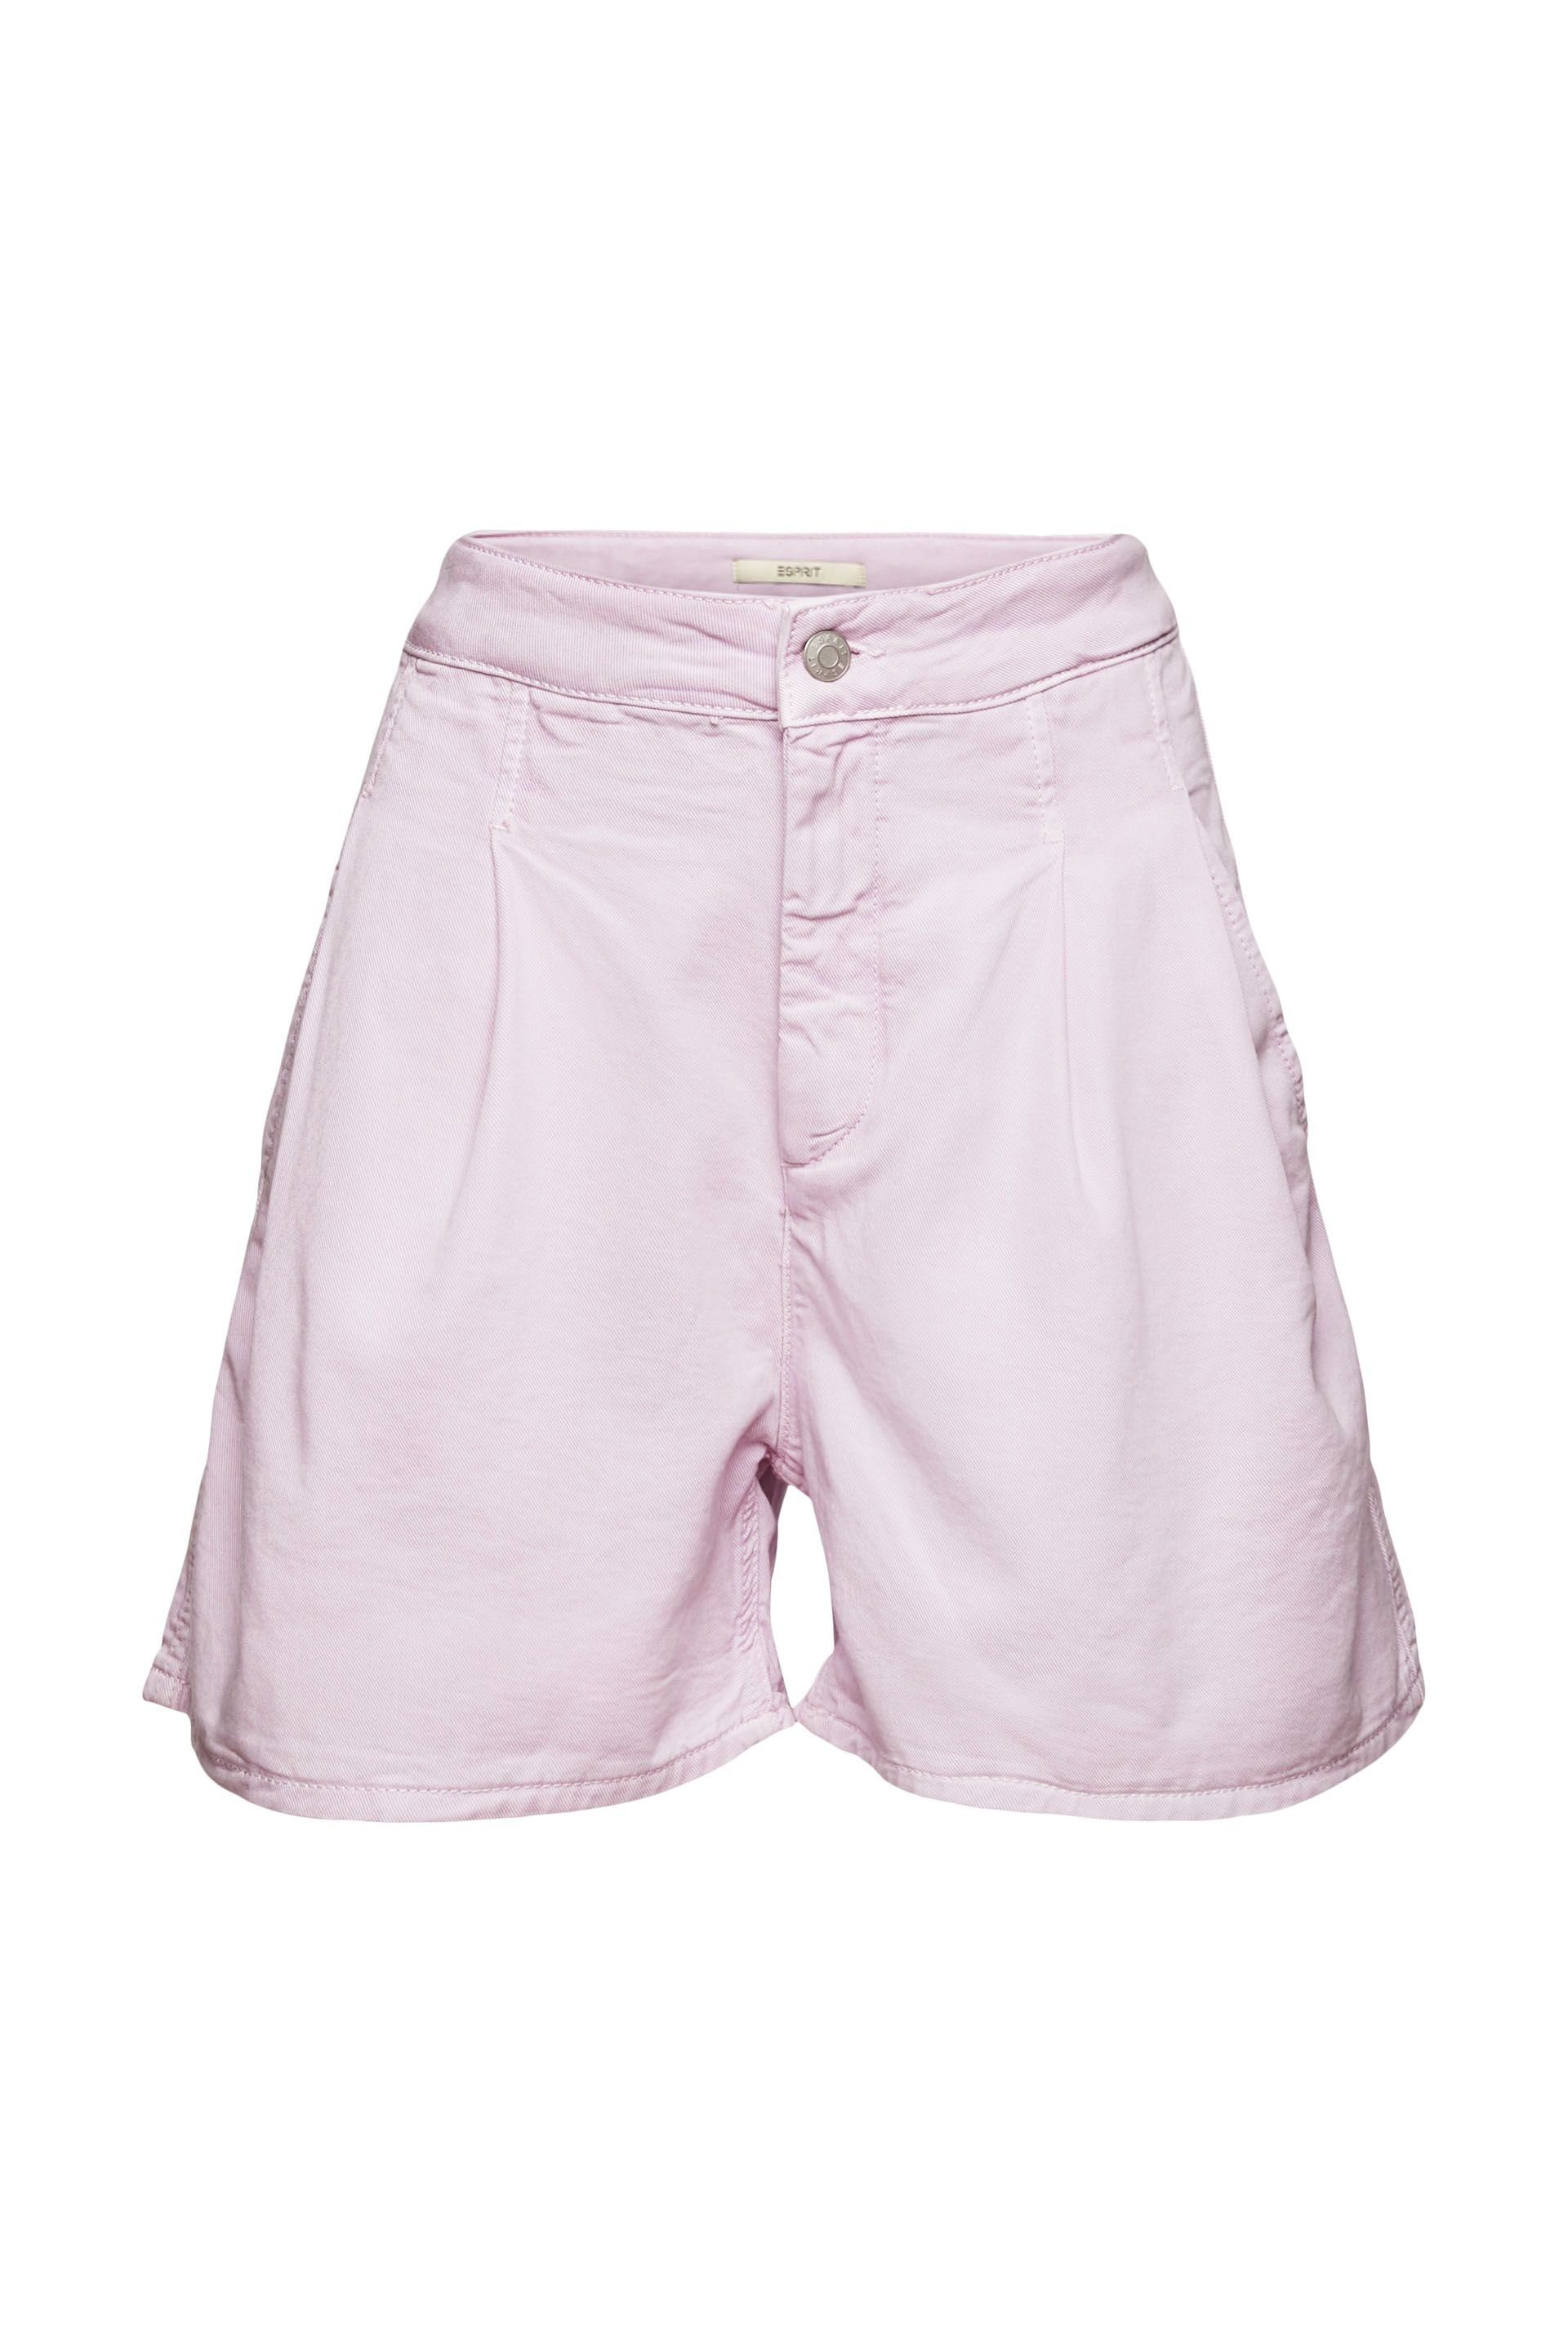 Esprit Shorts lilac